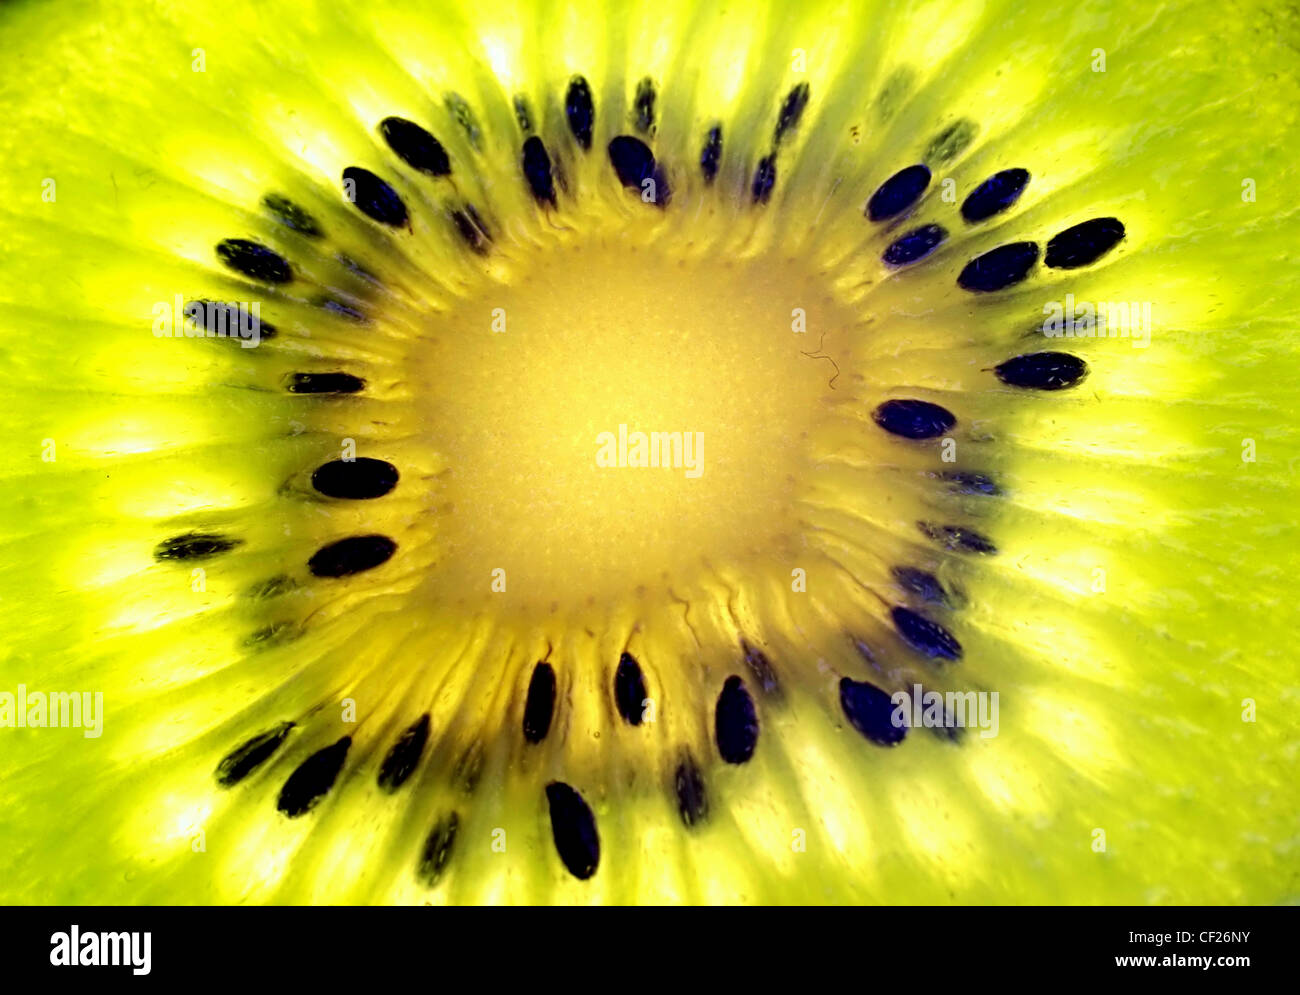 Amazing close-up de kiwi avec beaucoup de couleurs et de lumière Banque D'Images